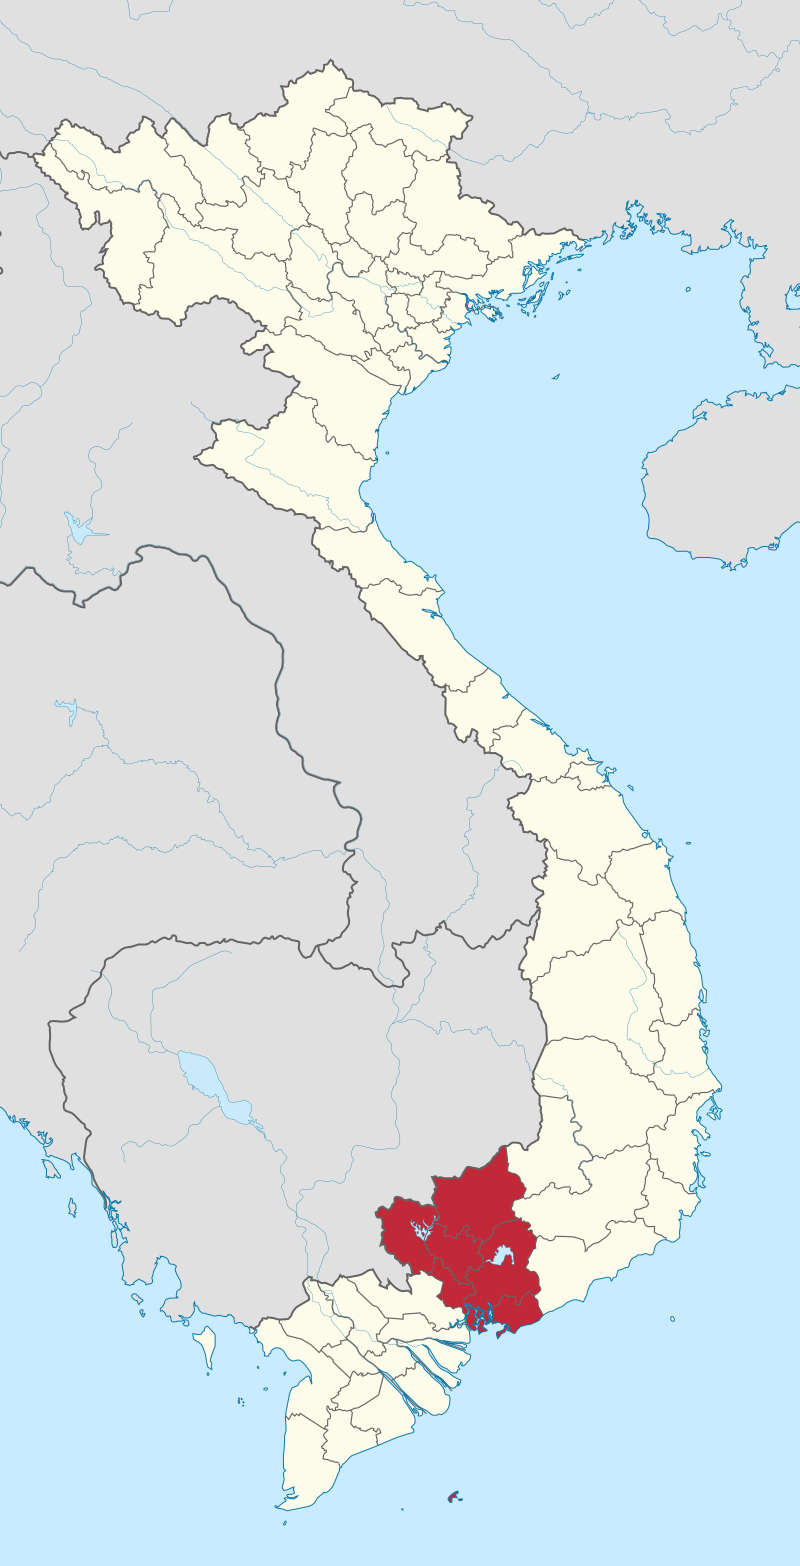 Tìm hiểu về Đông Nam Bộ thông qua Wikipedia tiếng Việt. Khám phá về lịch sử, văn hóa, kiến trúc, nghệ thuật và hơn thế nữa. Đây là cách tốt nhất để tìm hiểu về miền Nam Việt Nam đầy màu sắc và đa dạng. Nhấp vào hình ảnh để khám phá thêm!